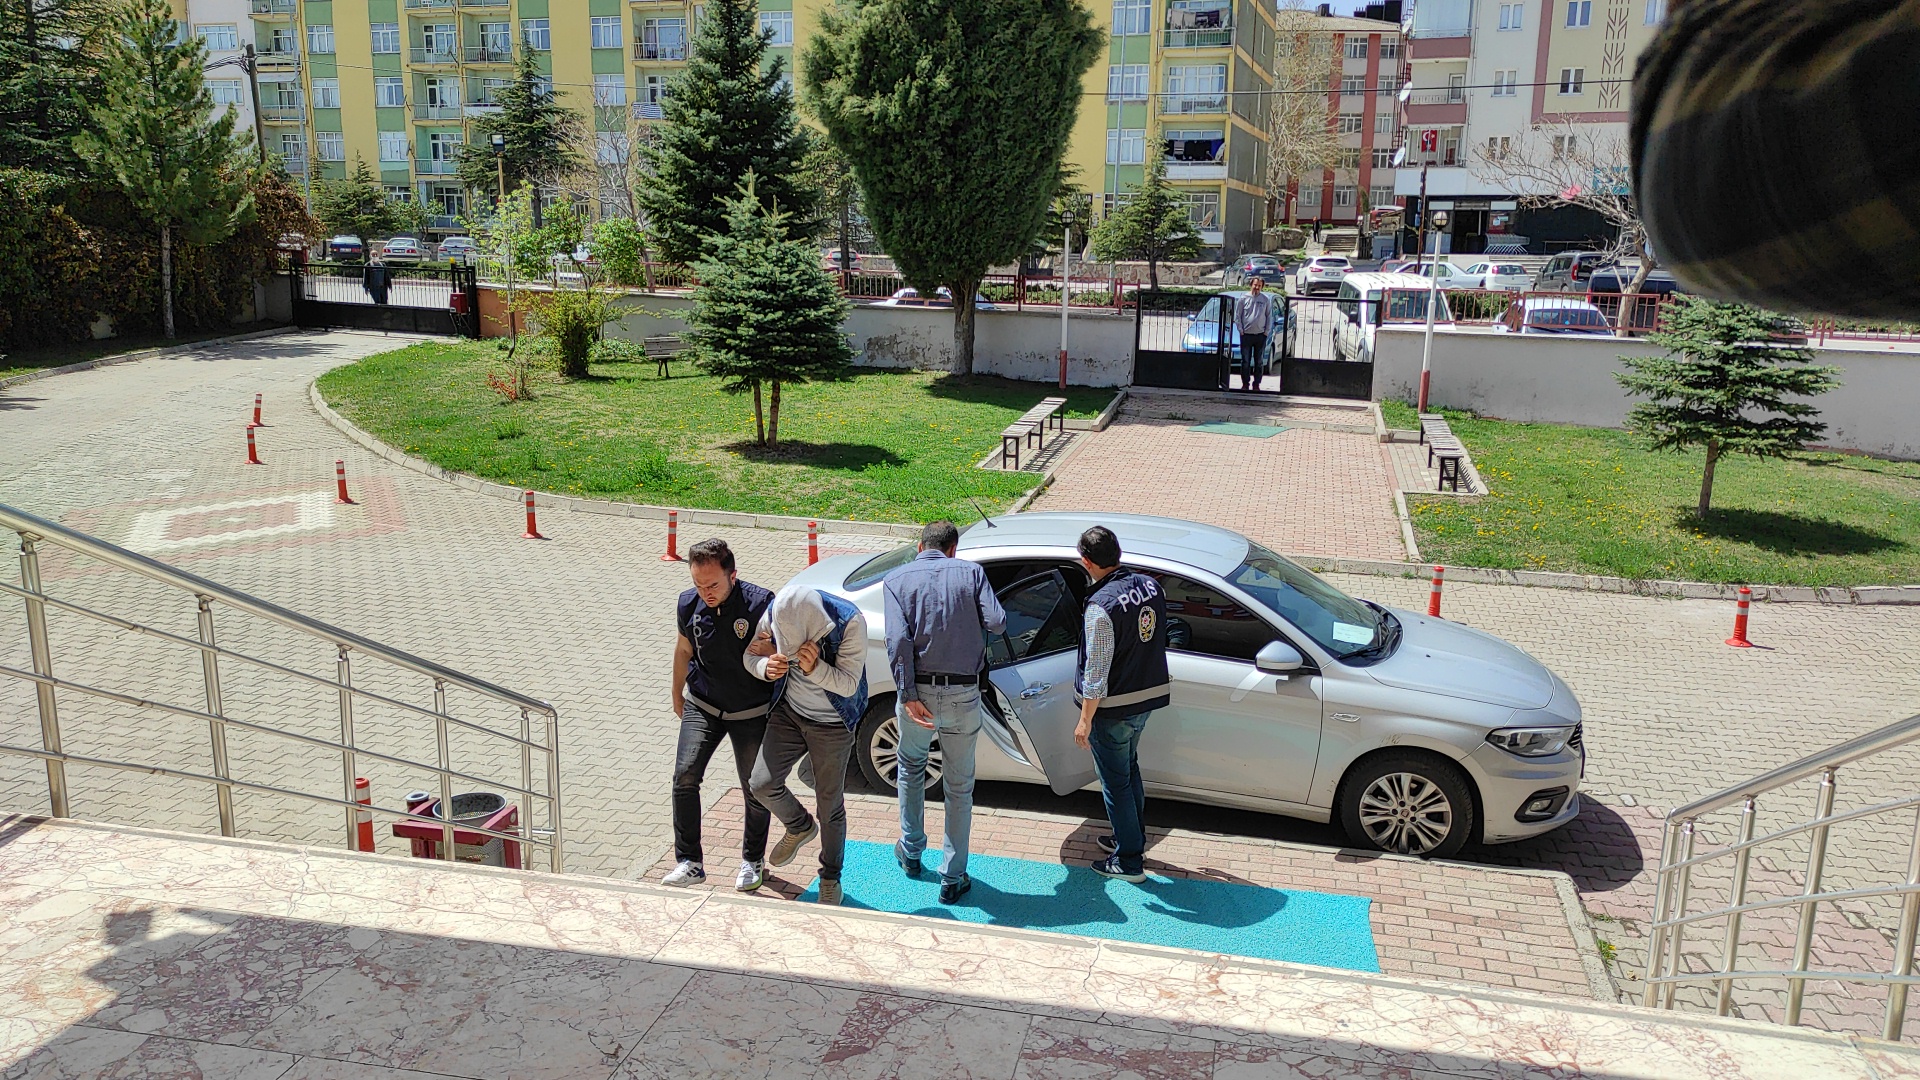 Konya'da uyuşturucu tacirleri yakalandı